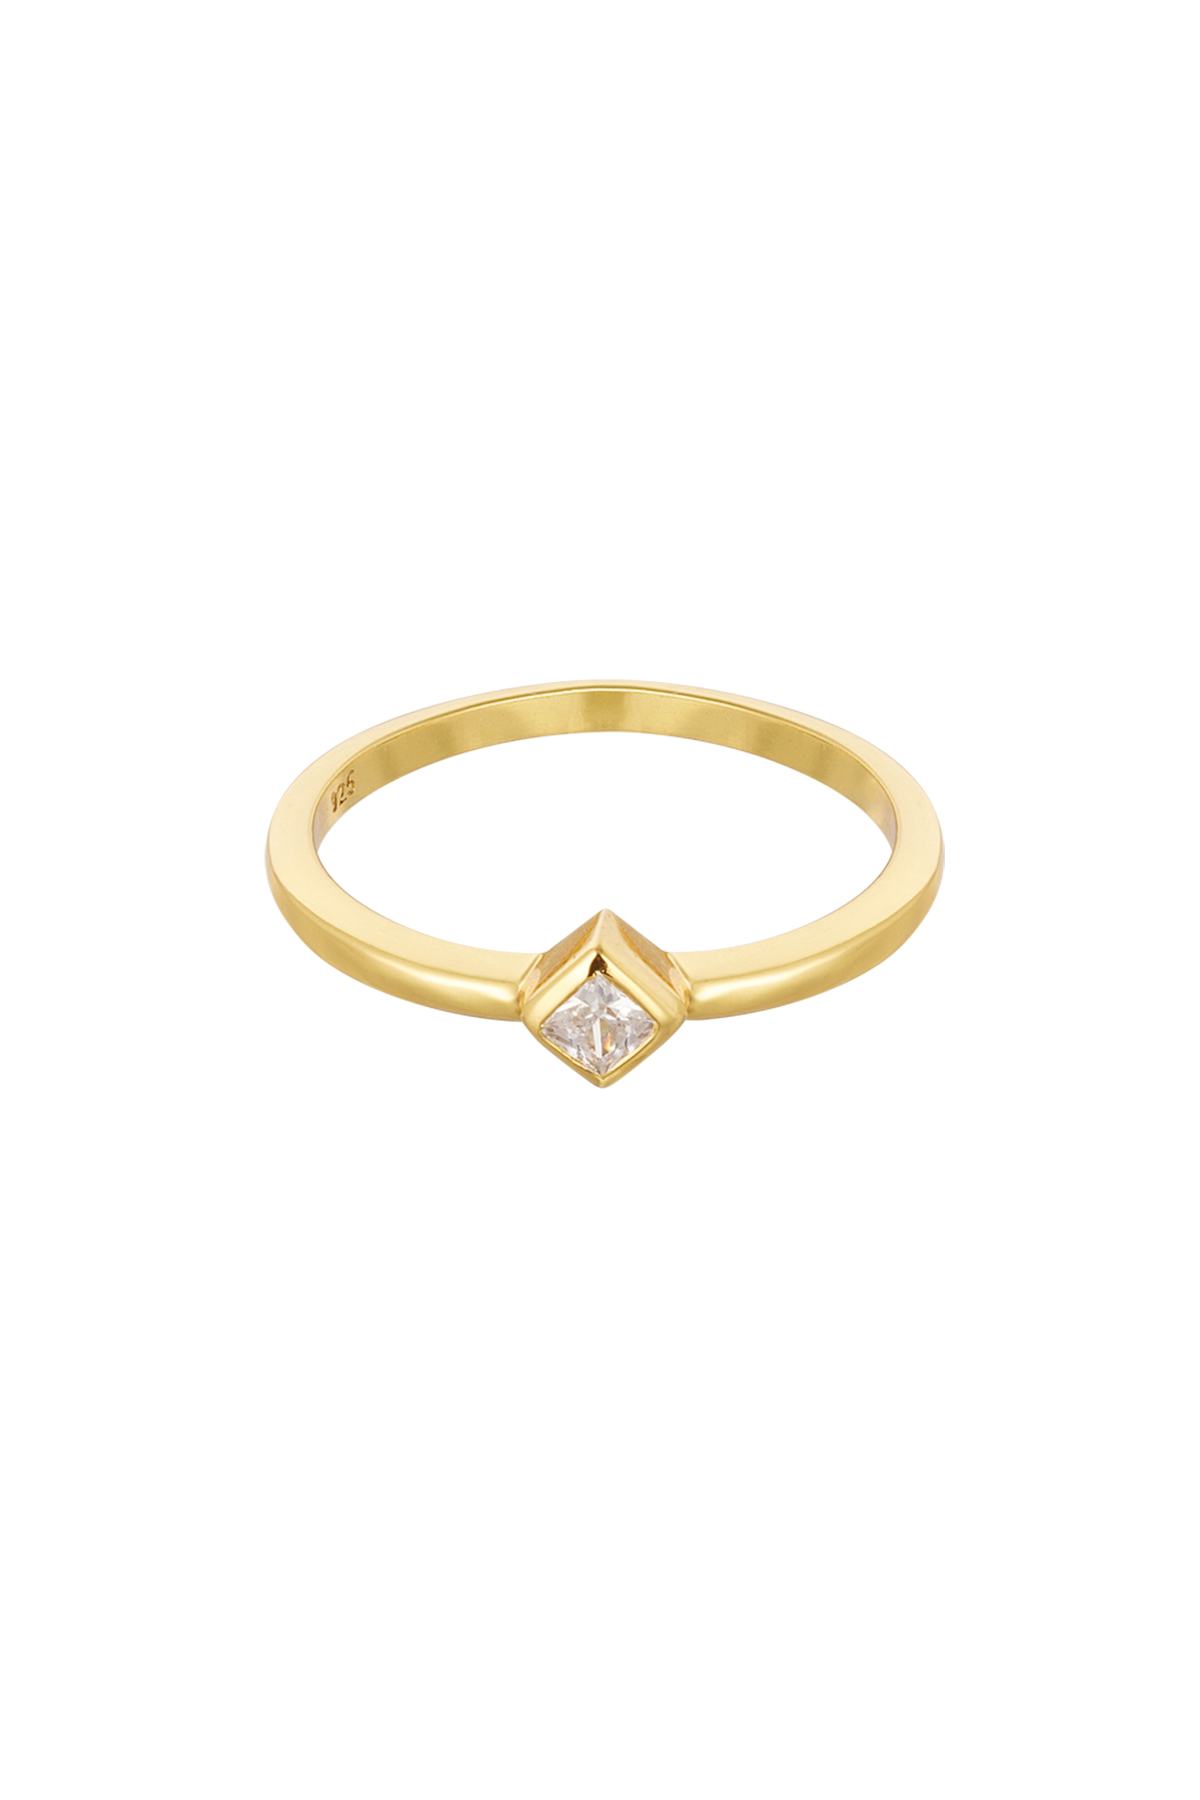 Bague diamant pierre - Argent 925 h5 